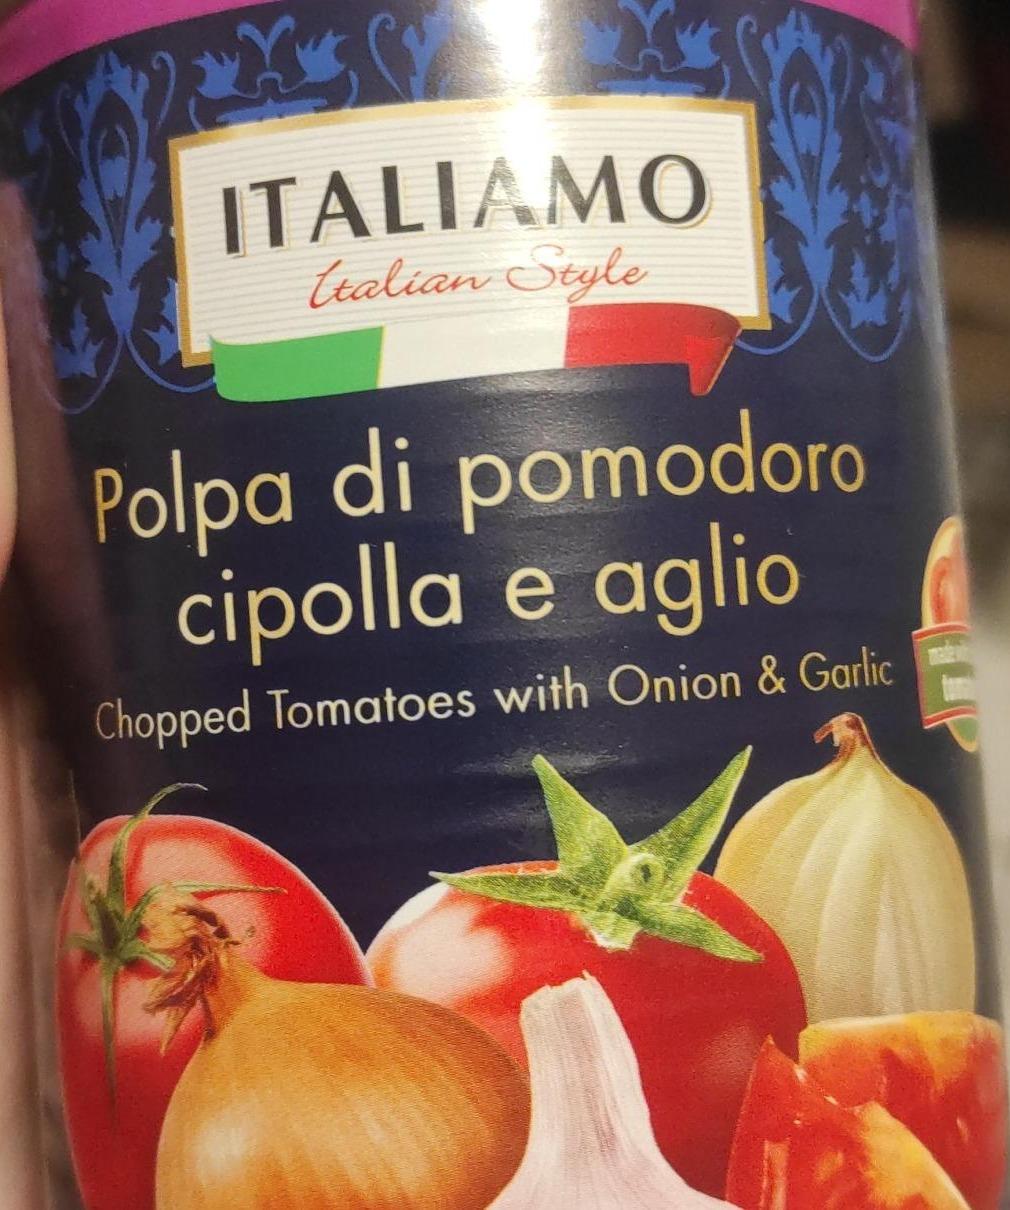 Fotografie - Polpa di pomodoro cipolla e aglio Italiamo